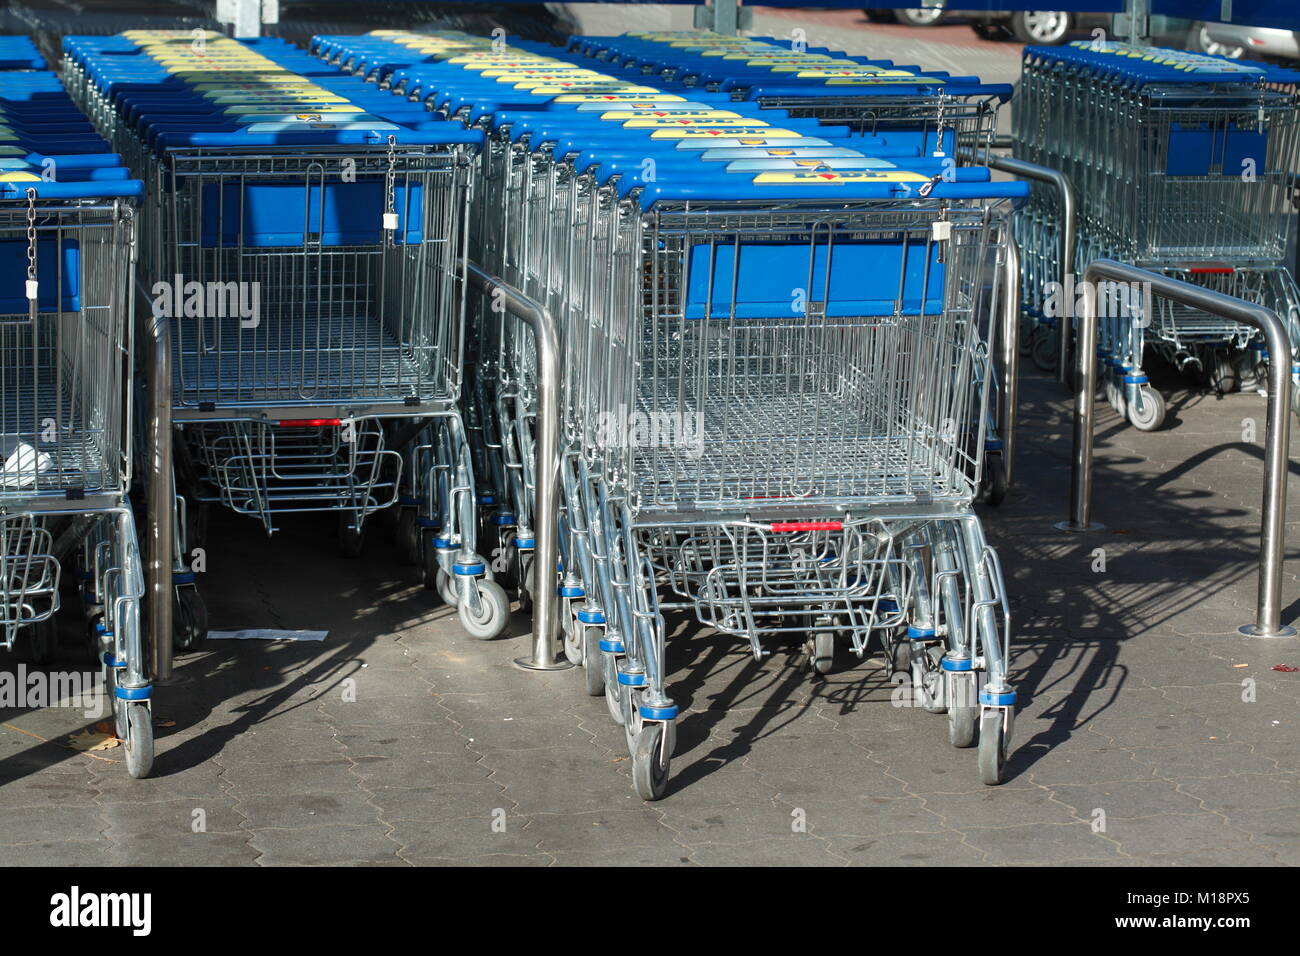 Row of shopping carts in front of shopping centre, Germany, Europe I Einkaufswagen in einer Reihe vor einem Einkaufszentrum, Verden an der aller, Nied Stock Photo